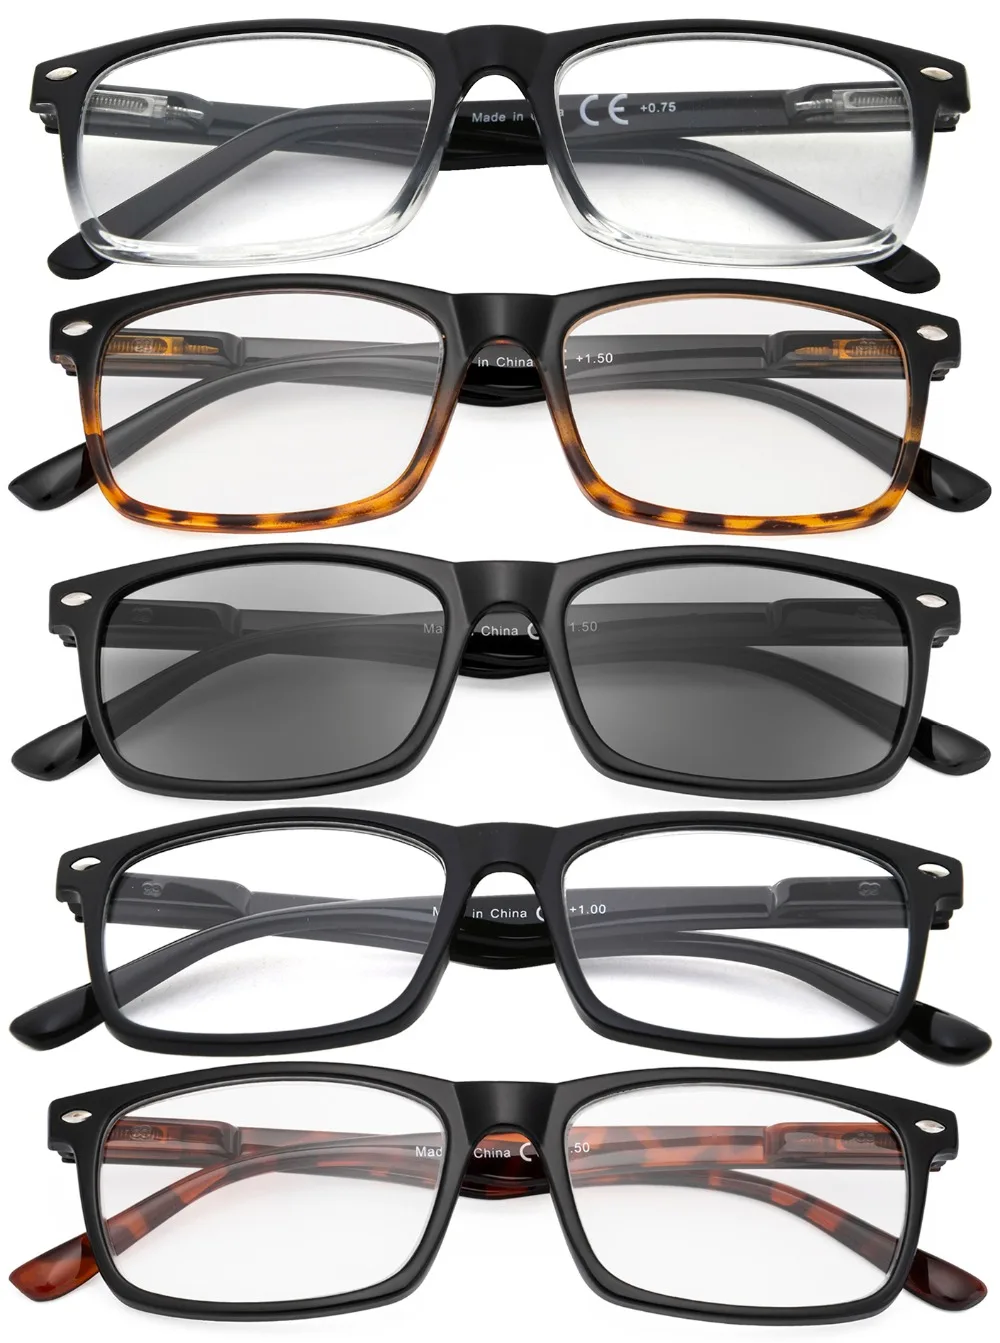 R899X Eyekepper мужские очки для чтения-5 пар ридеров для мужчин-включает очки для чтения